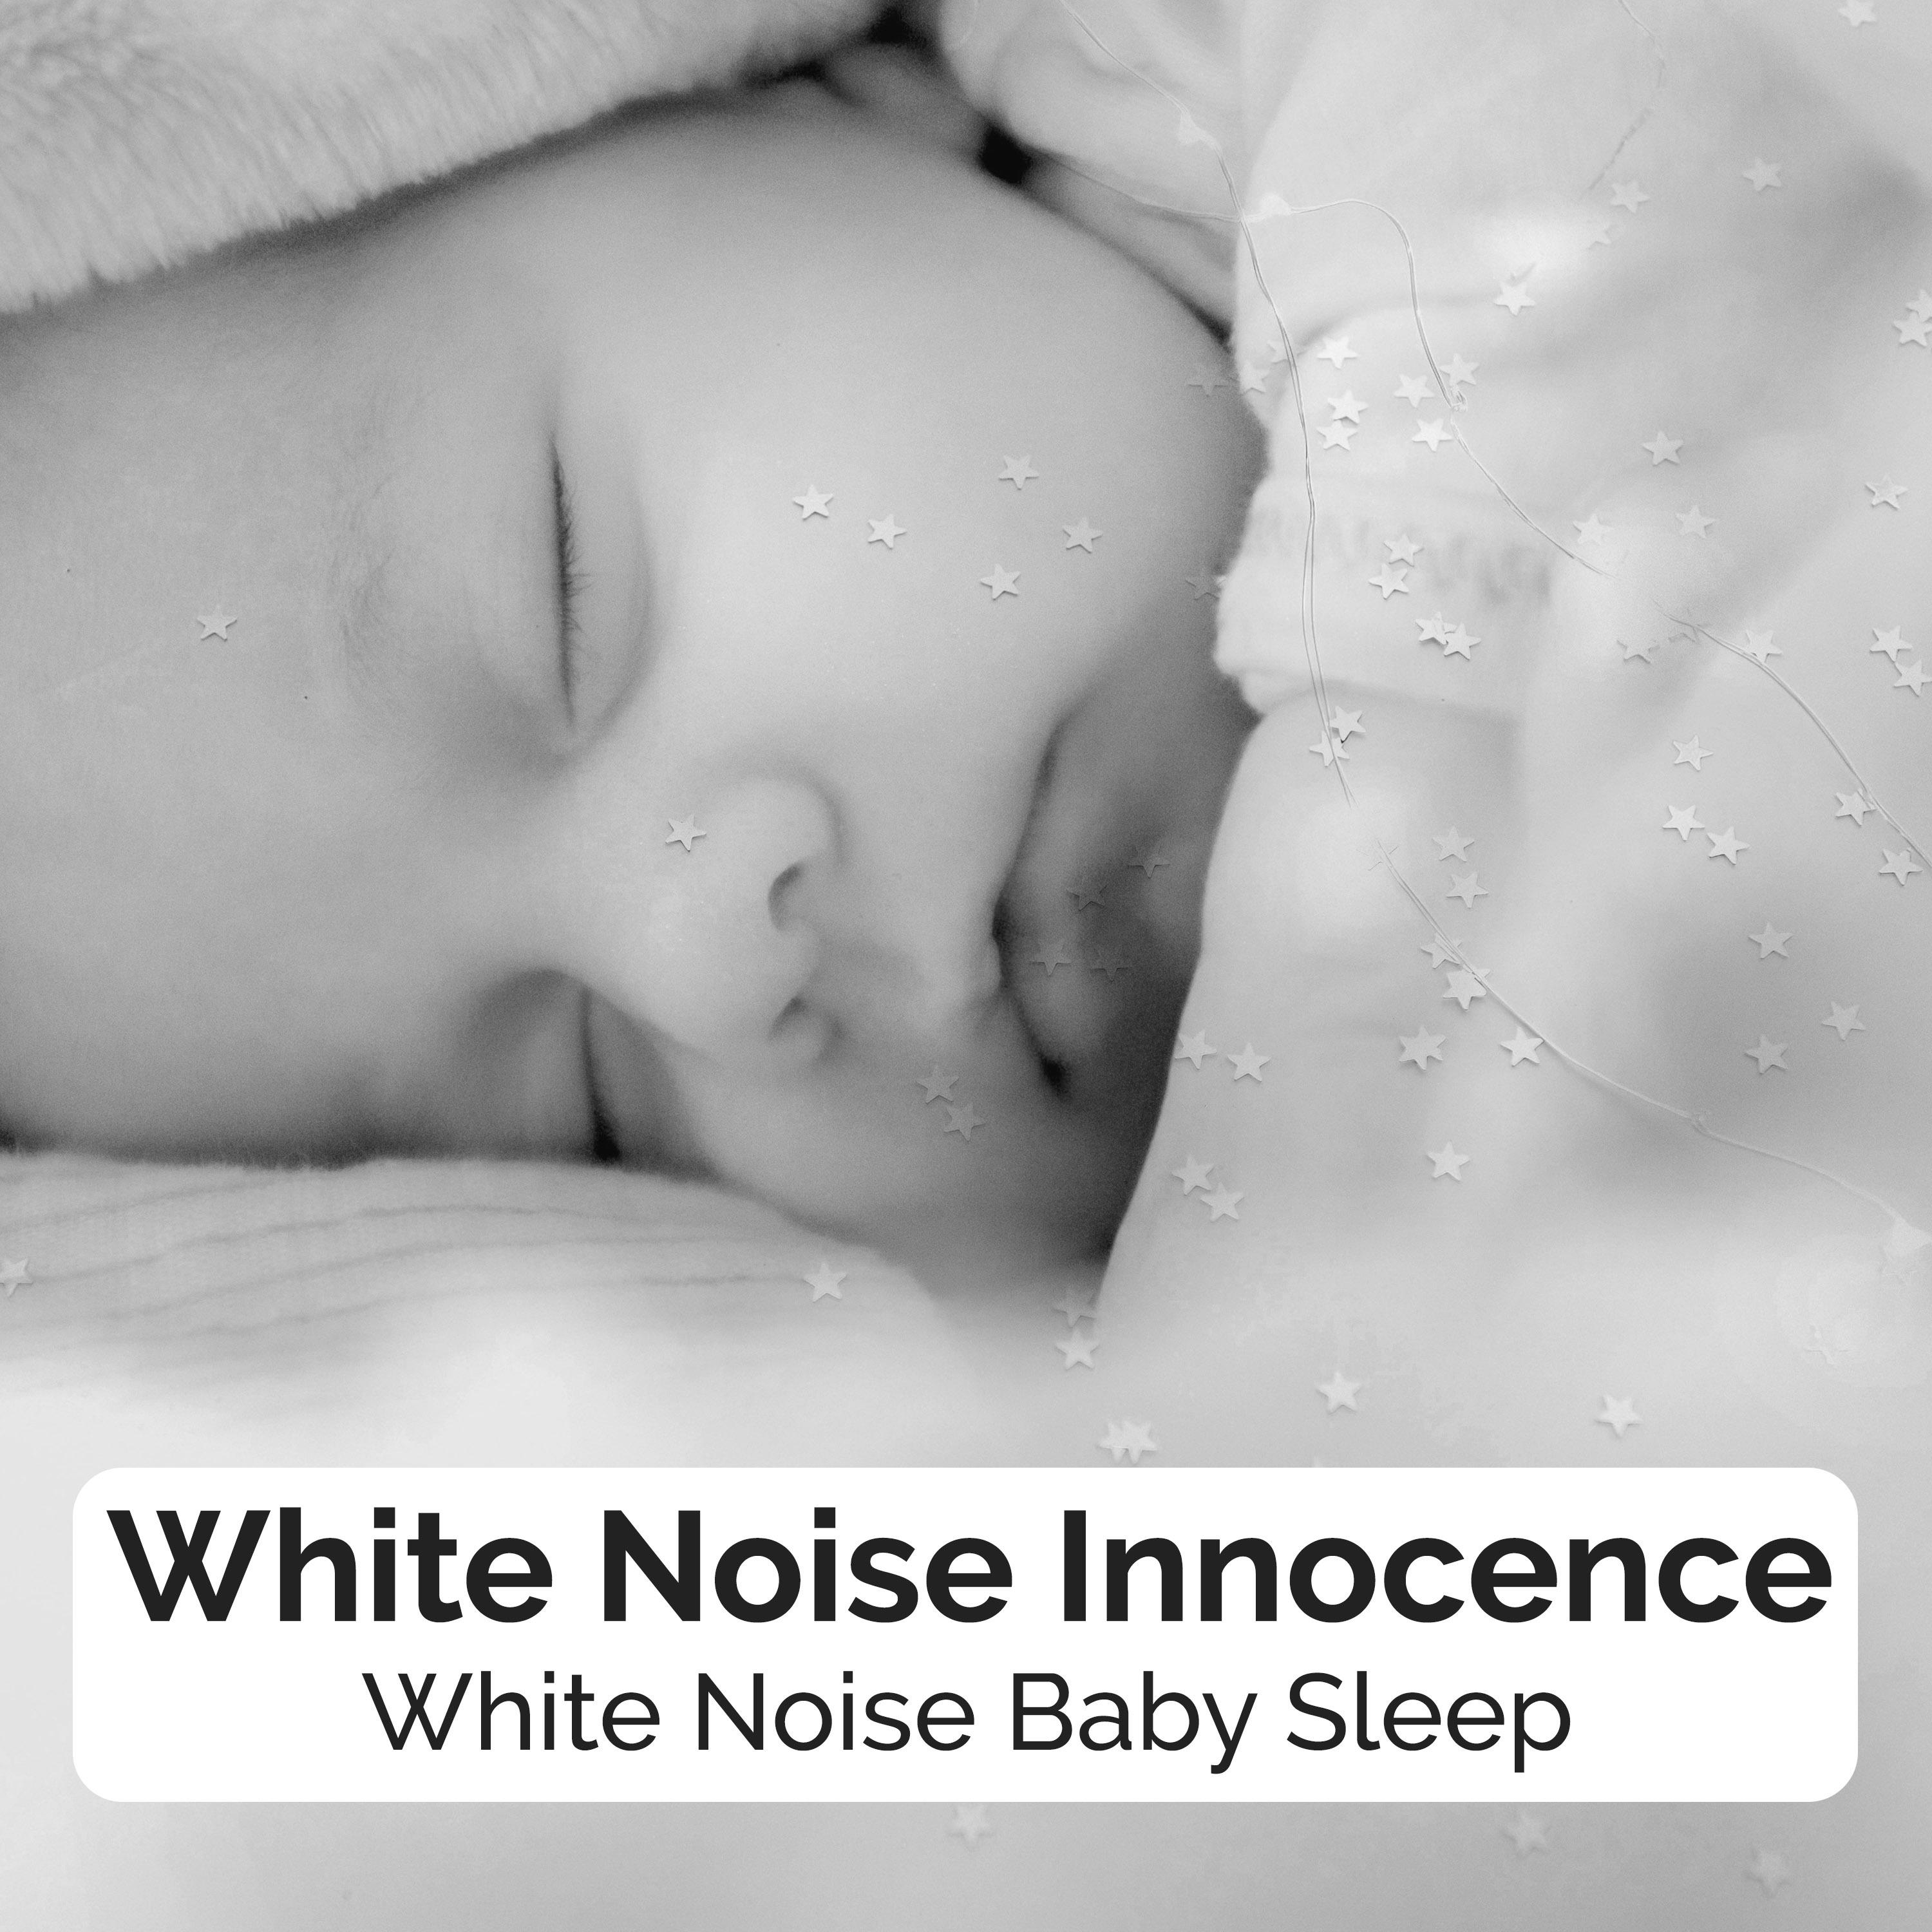 White Noise Innocence